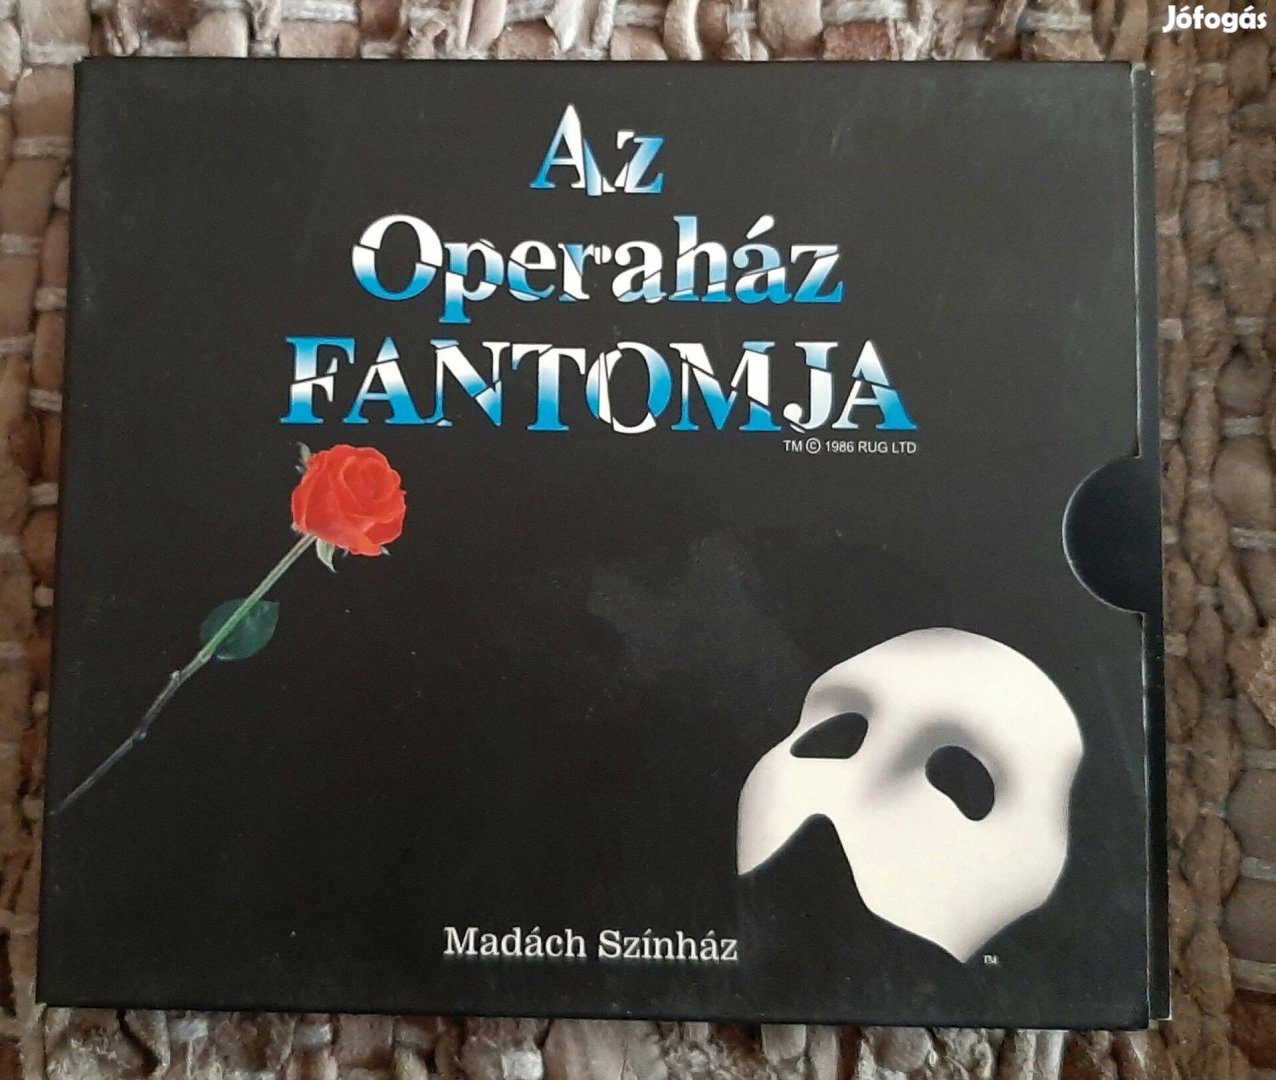 Az operaház fantomja dupla CD